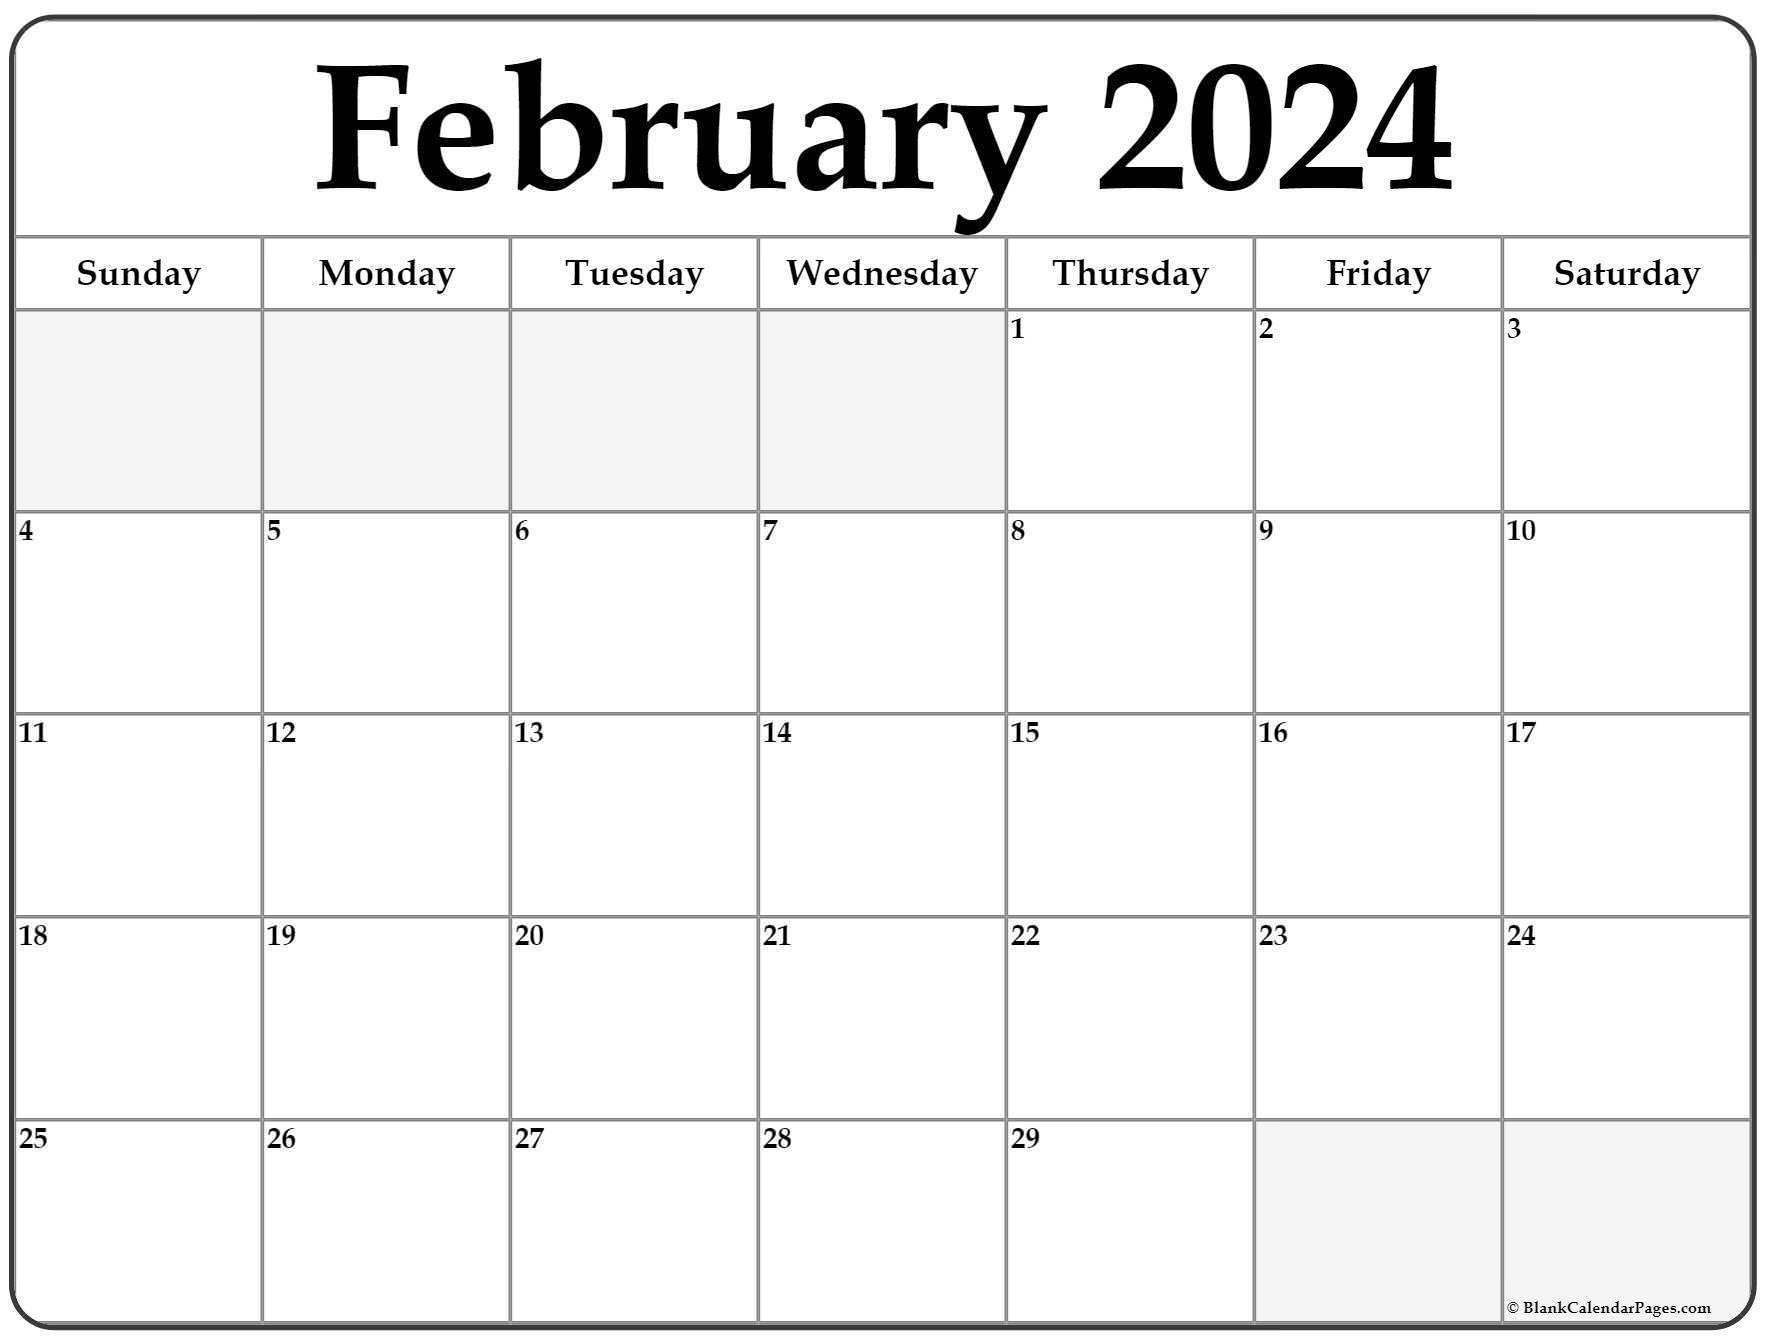 Print Calendar February 2022 February 2022 Calendar | Free Printable Calendar Templates